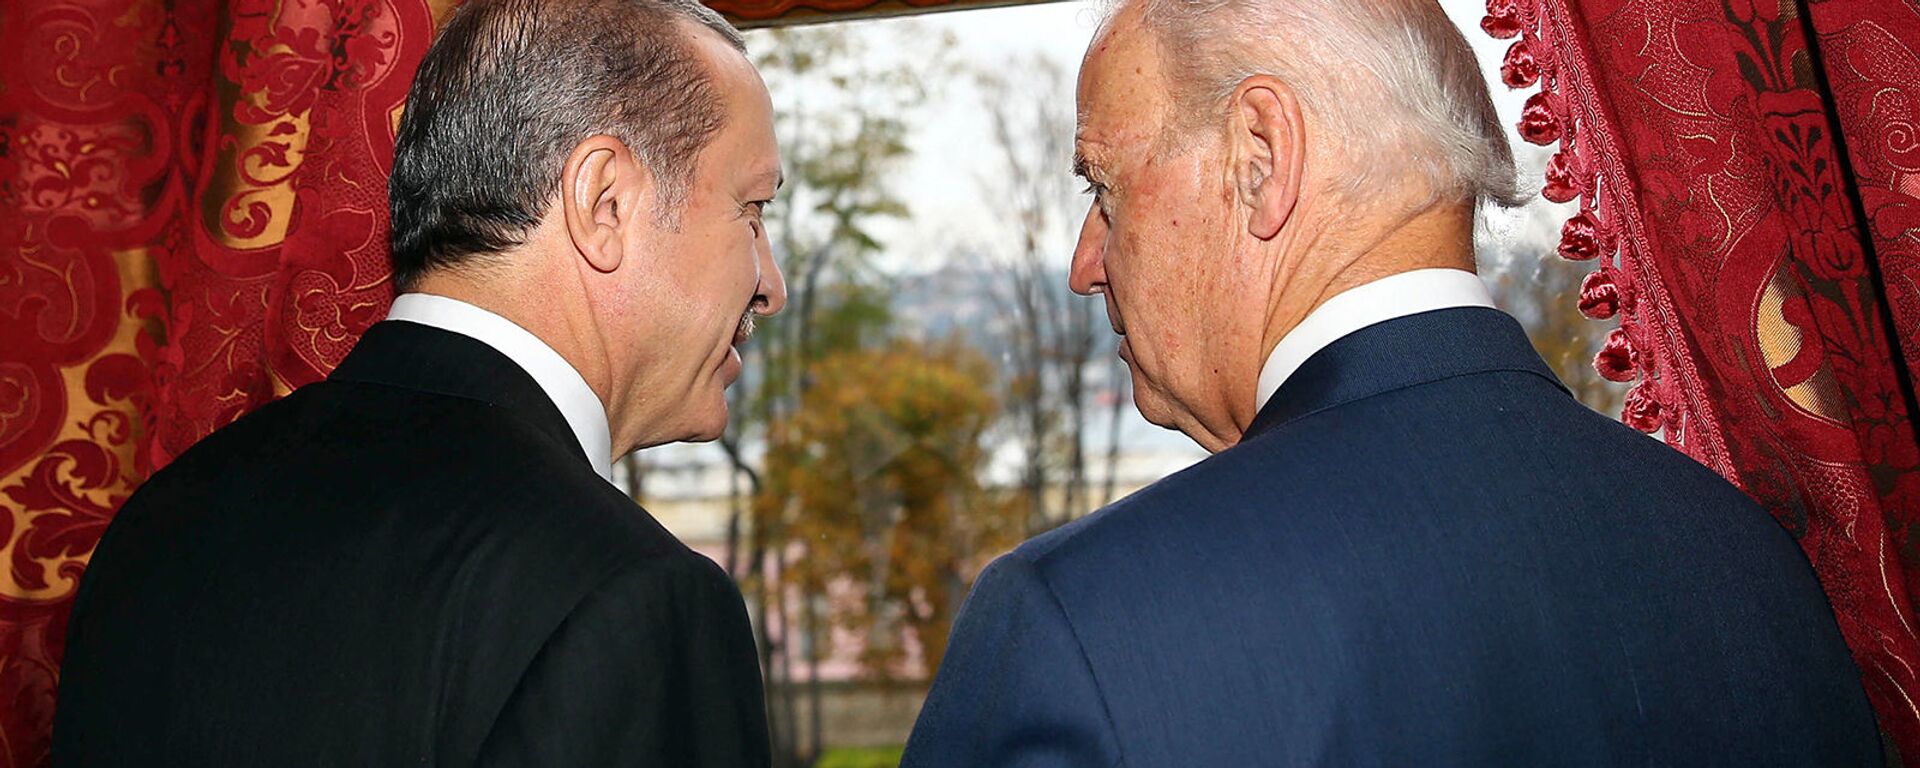 Беседа вице-президента США Джо Байдена с президентом Турции Реджепом Эрдоганом во дворце Бейлербейи (22 ноября 2014).  Стамбул - Sputnik Արմենիա, 1920, 13.04.2021